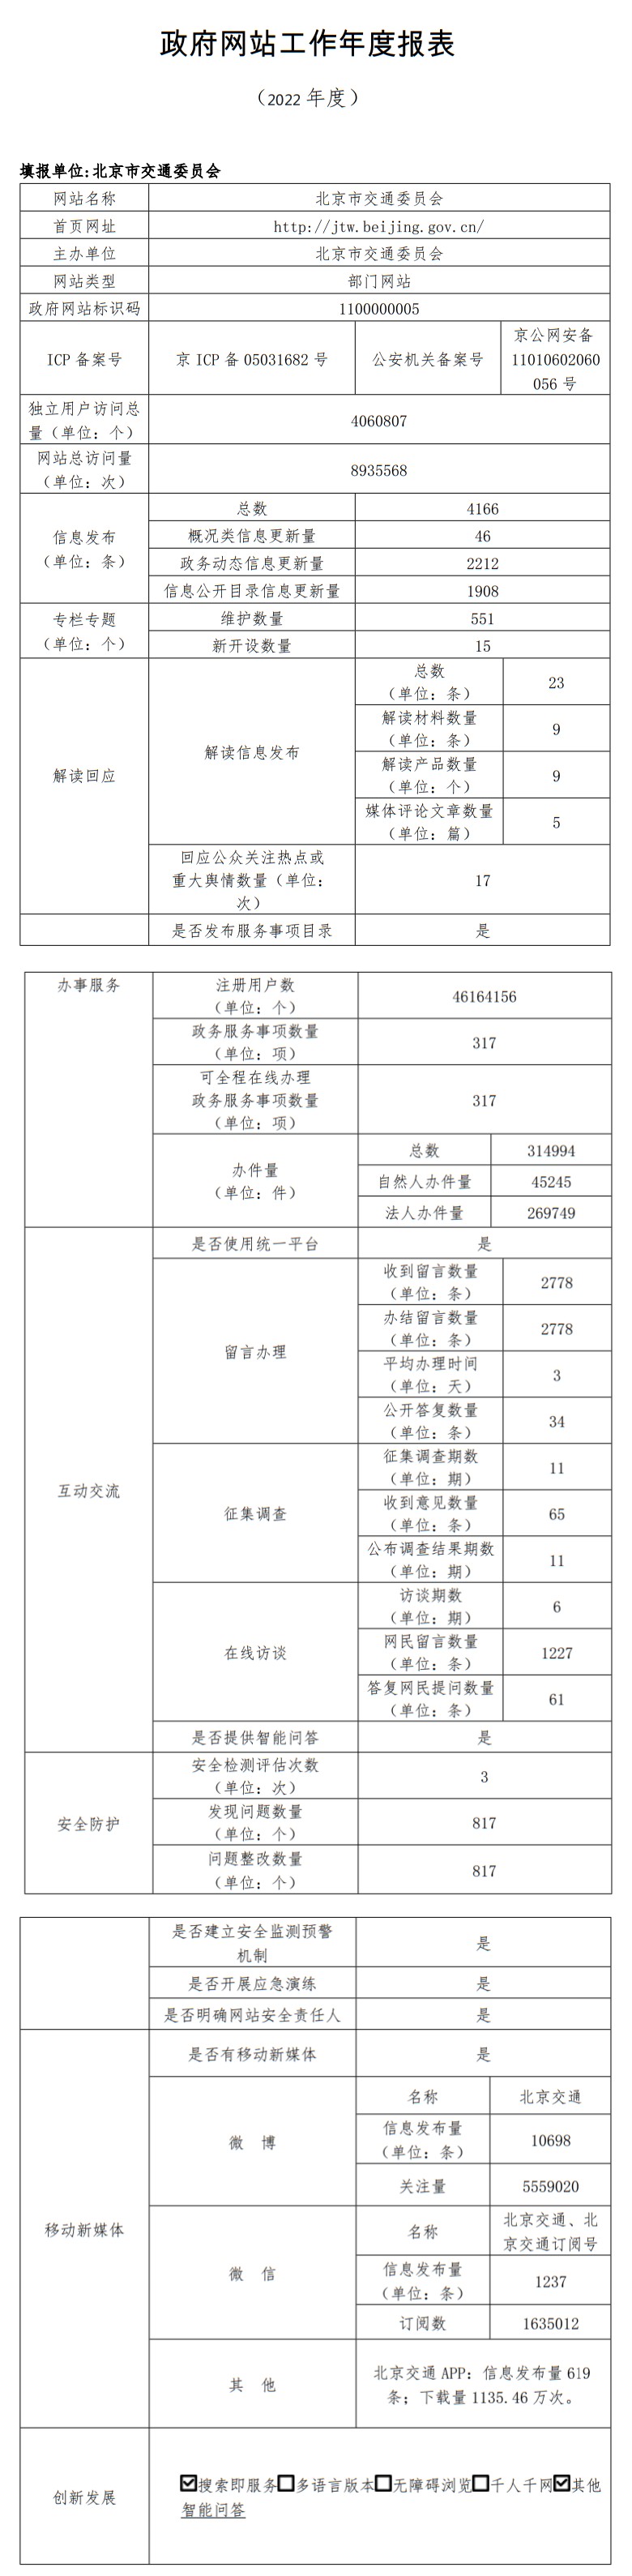 北京市交通委员会2022年政府网站年度工作报表